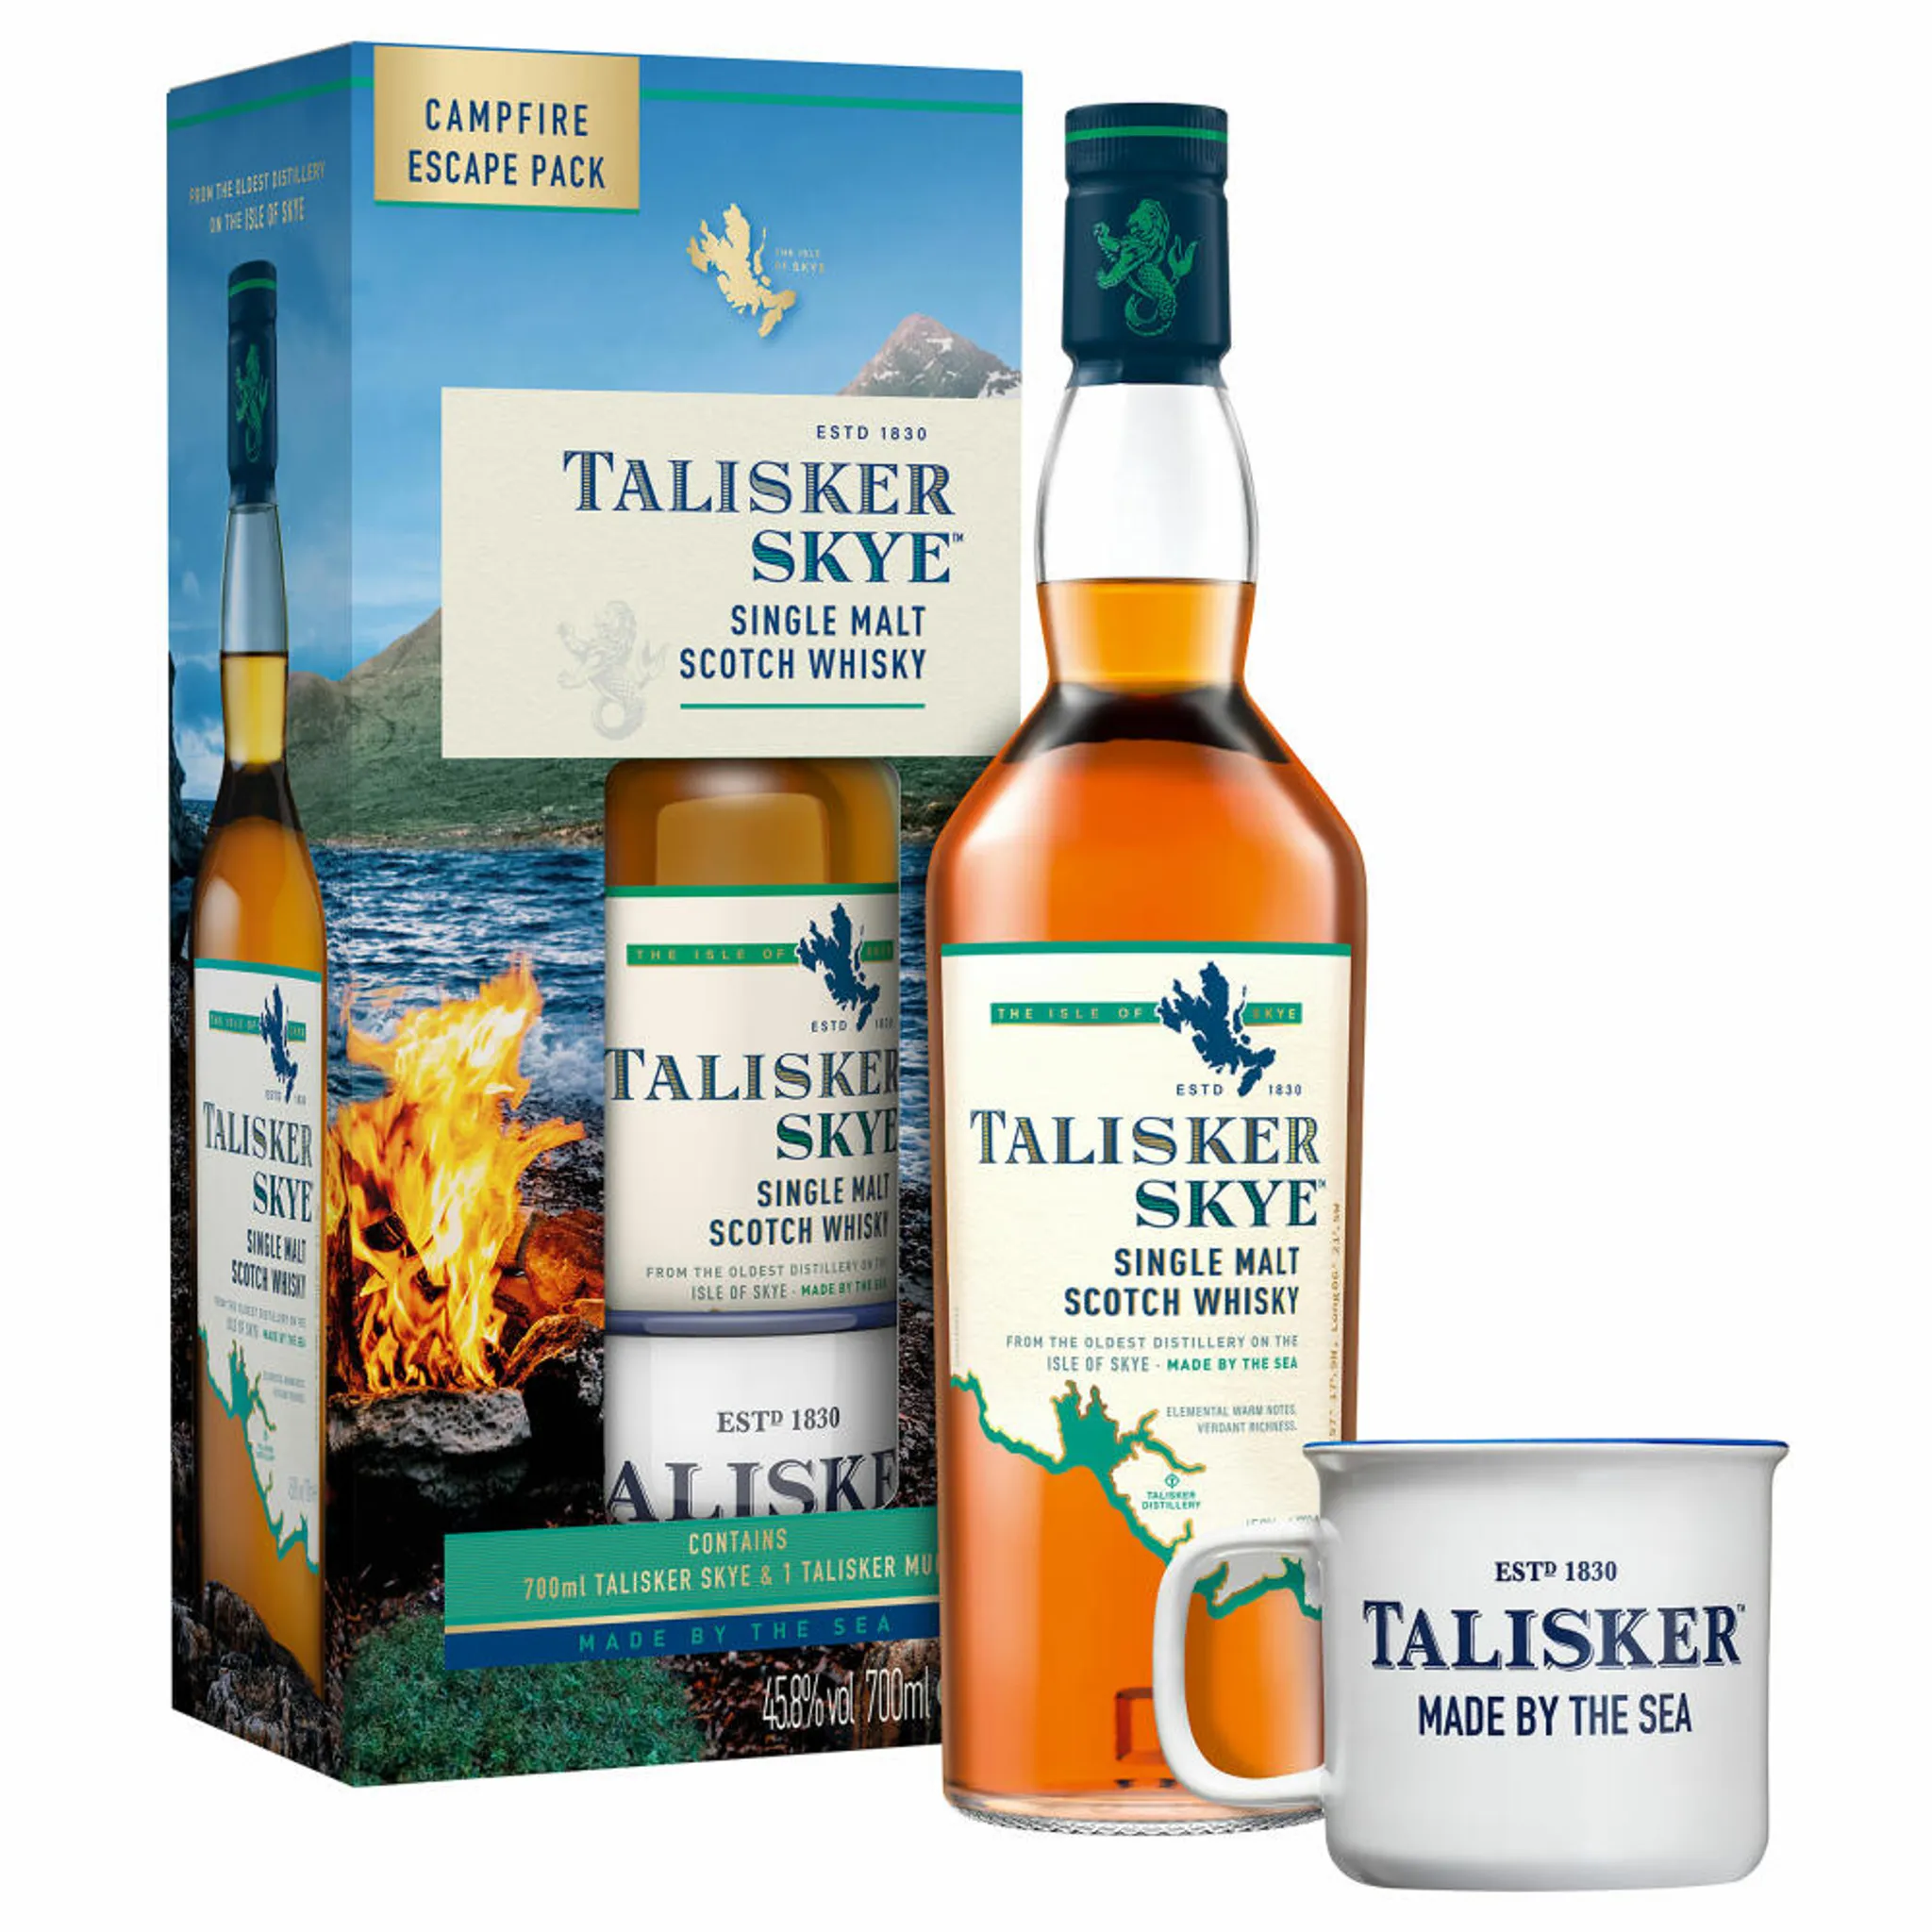 Malt Talisker Scotch Single Skye Whisky